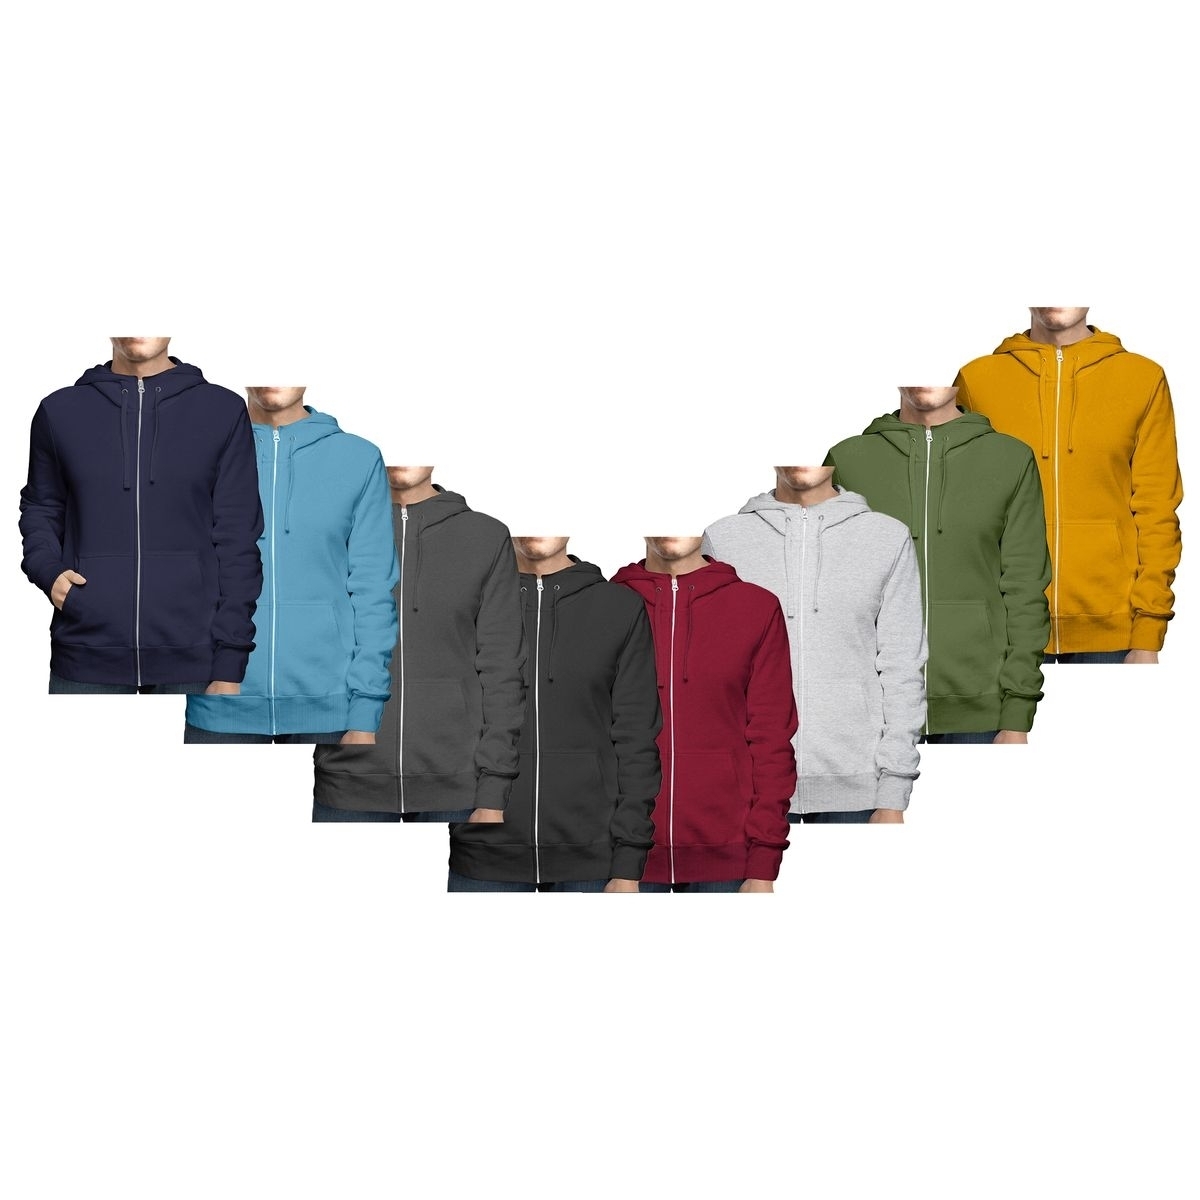 Men's Big & Tall Winter Warm Soft Cozy Full Zip-Up Fleece Lined Hoodie Sweatshirt - Grey, Medium